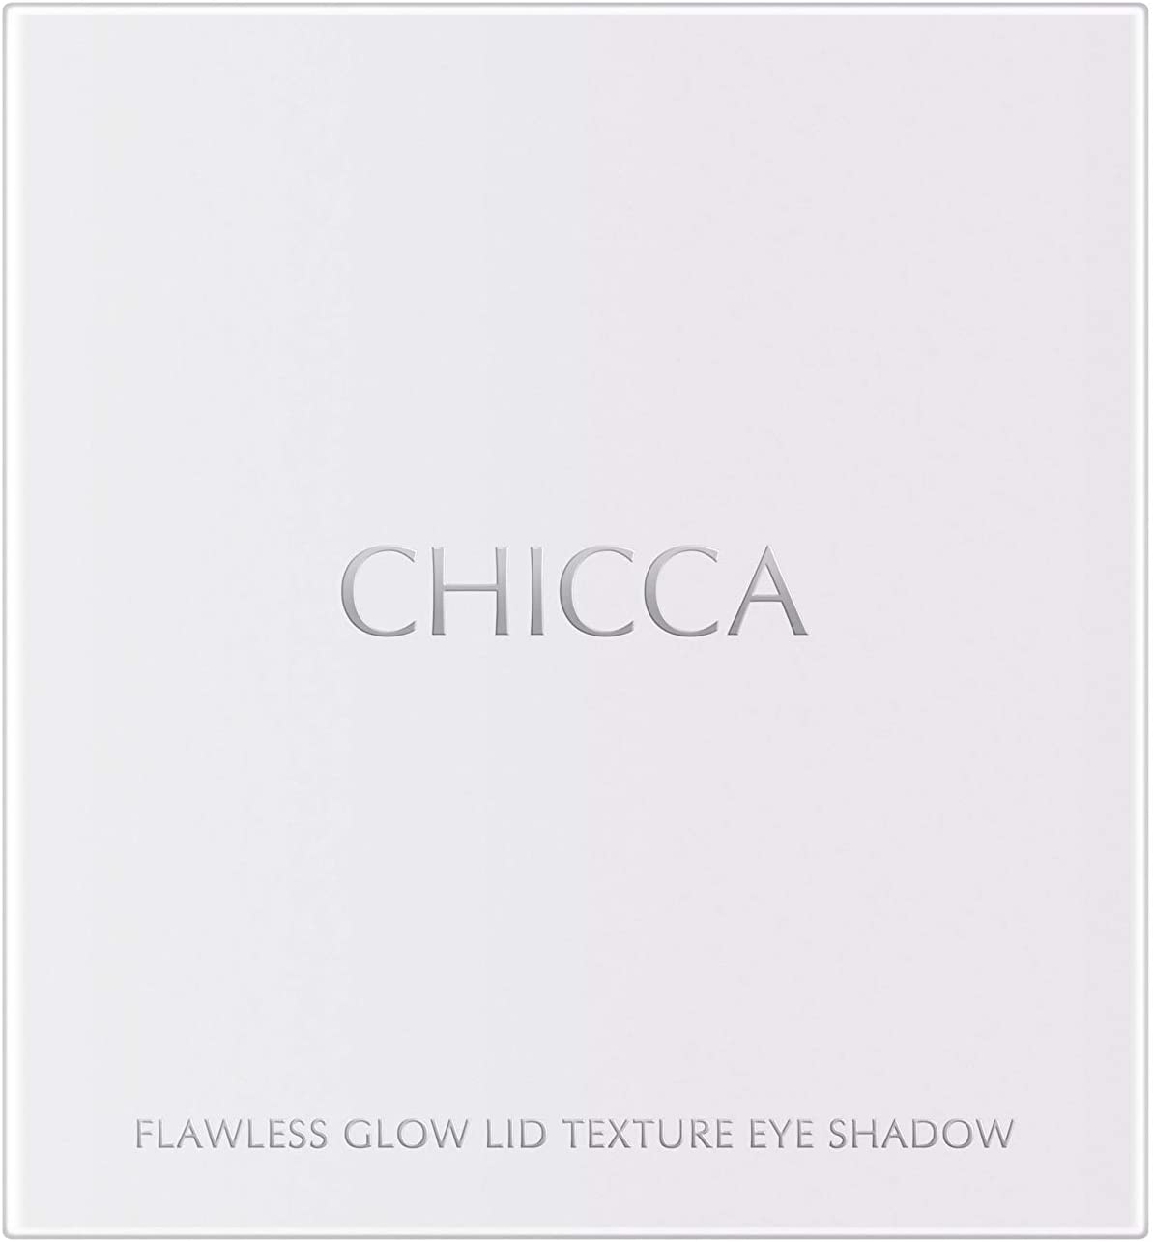 CHICCA(キッカ) フローレスグロウ リッドテクスチャー アイシャドウの商品画像サムネ3 